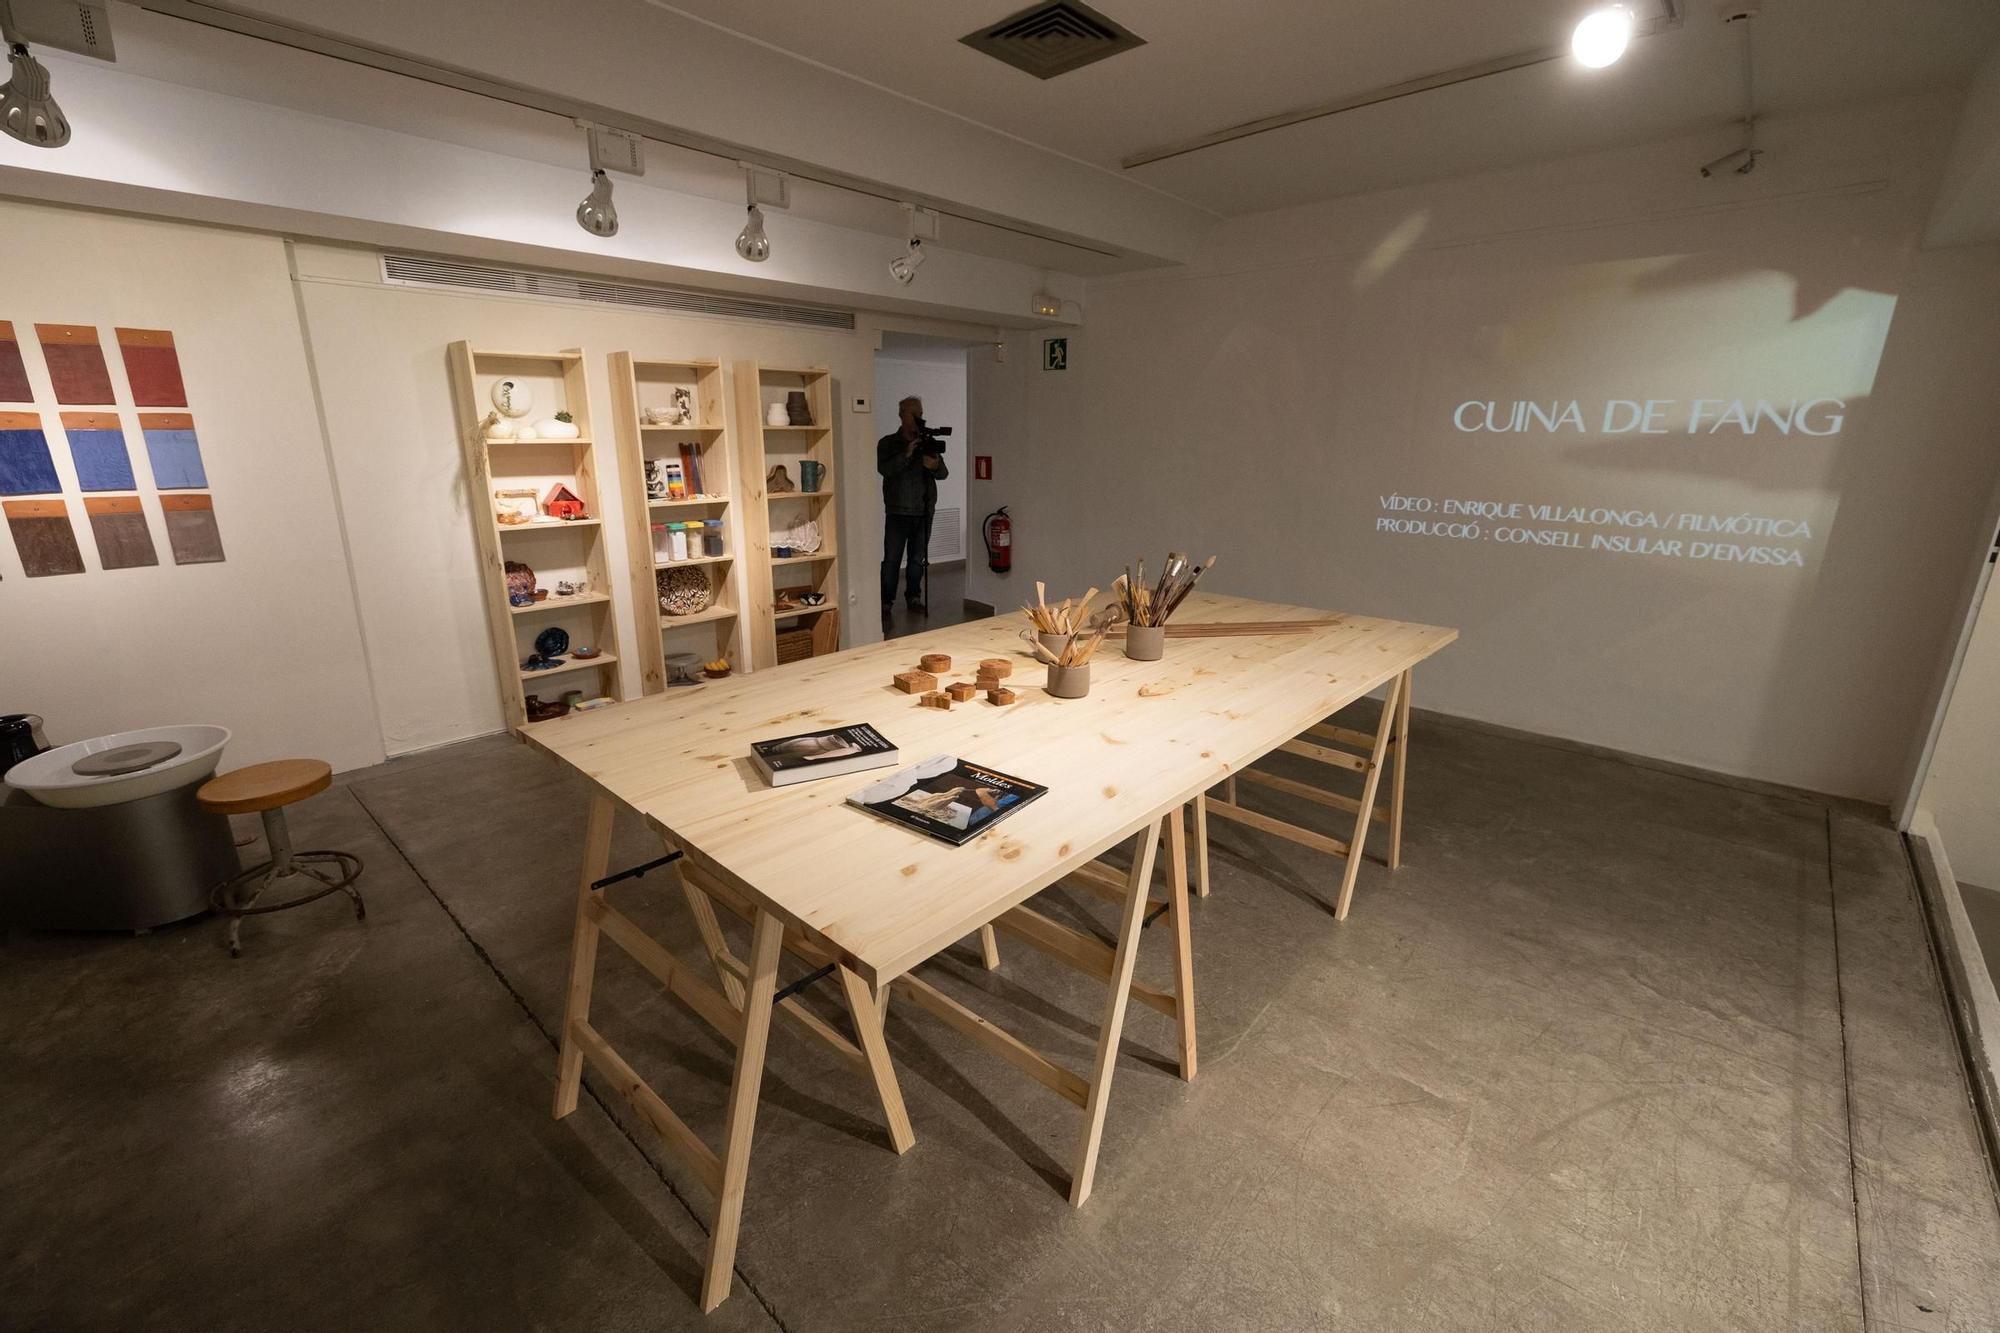 Galería: Exposición Cuina de Fang en sa Nostra Sala